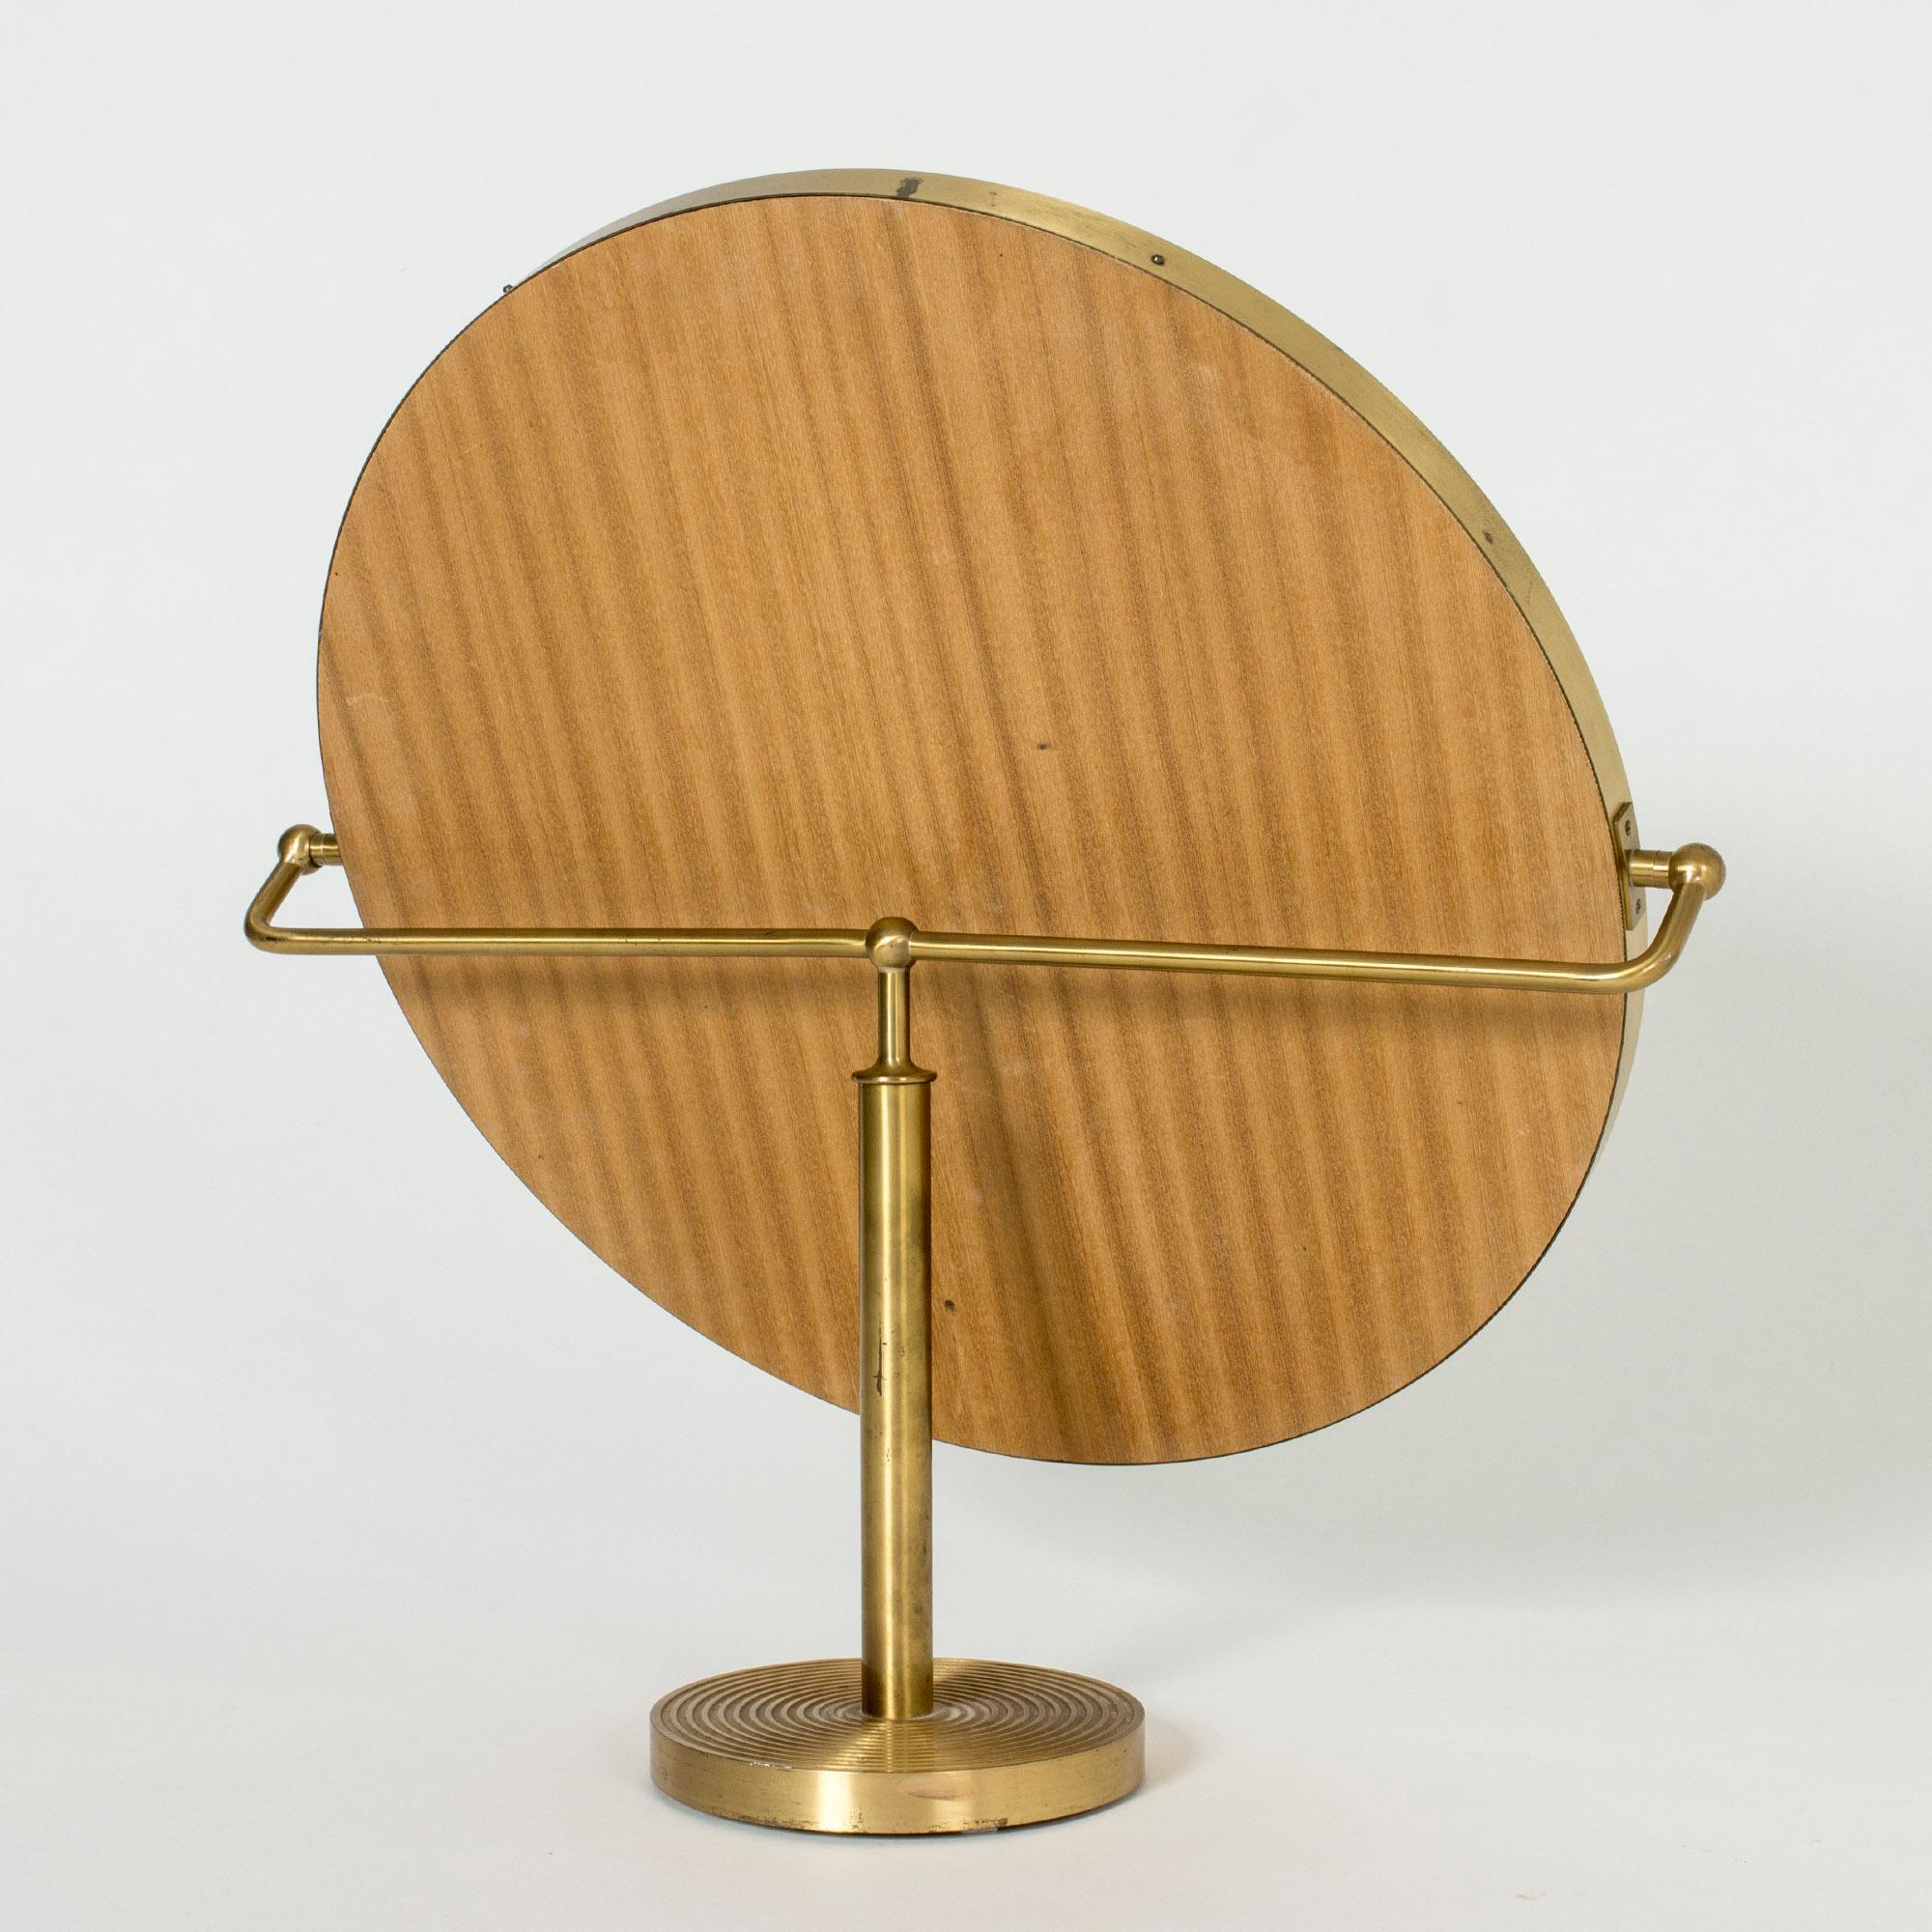 Swedish Brass Table Mirror by Josef Frank for Svenskt Tenn, Sweden, 1950s